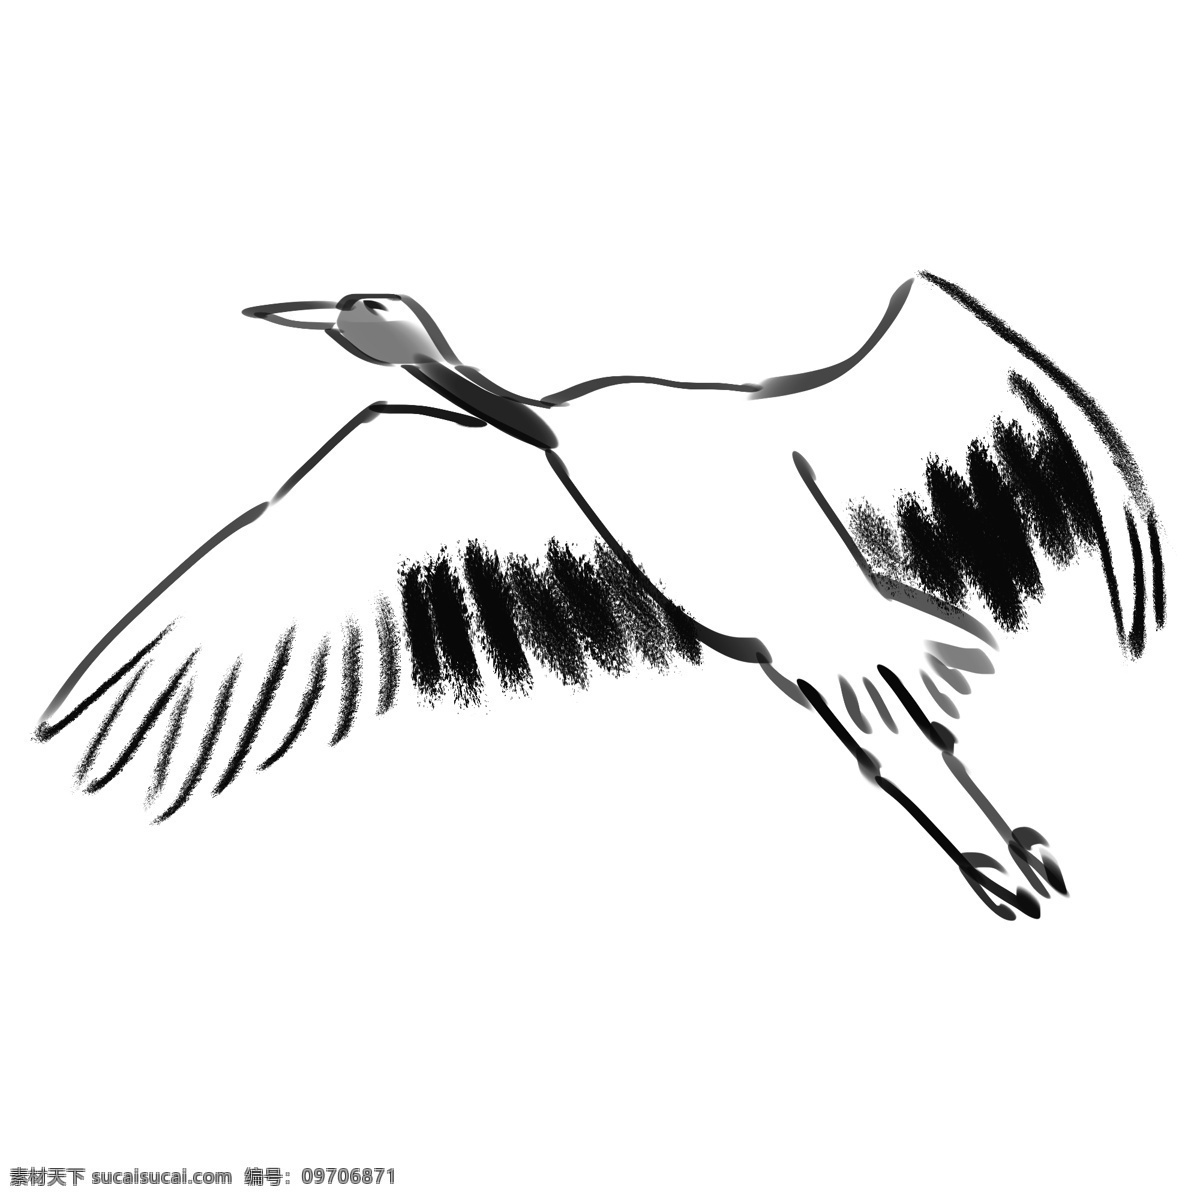 创意 水墨 飞舞 仙鹤 黑白仙鹤 鹤 白鹭 飞翔 一只鹤 鸟儿 动物 插画 手绘水墨鸟